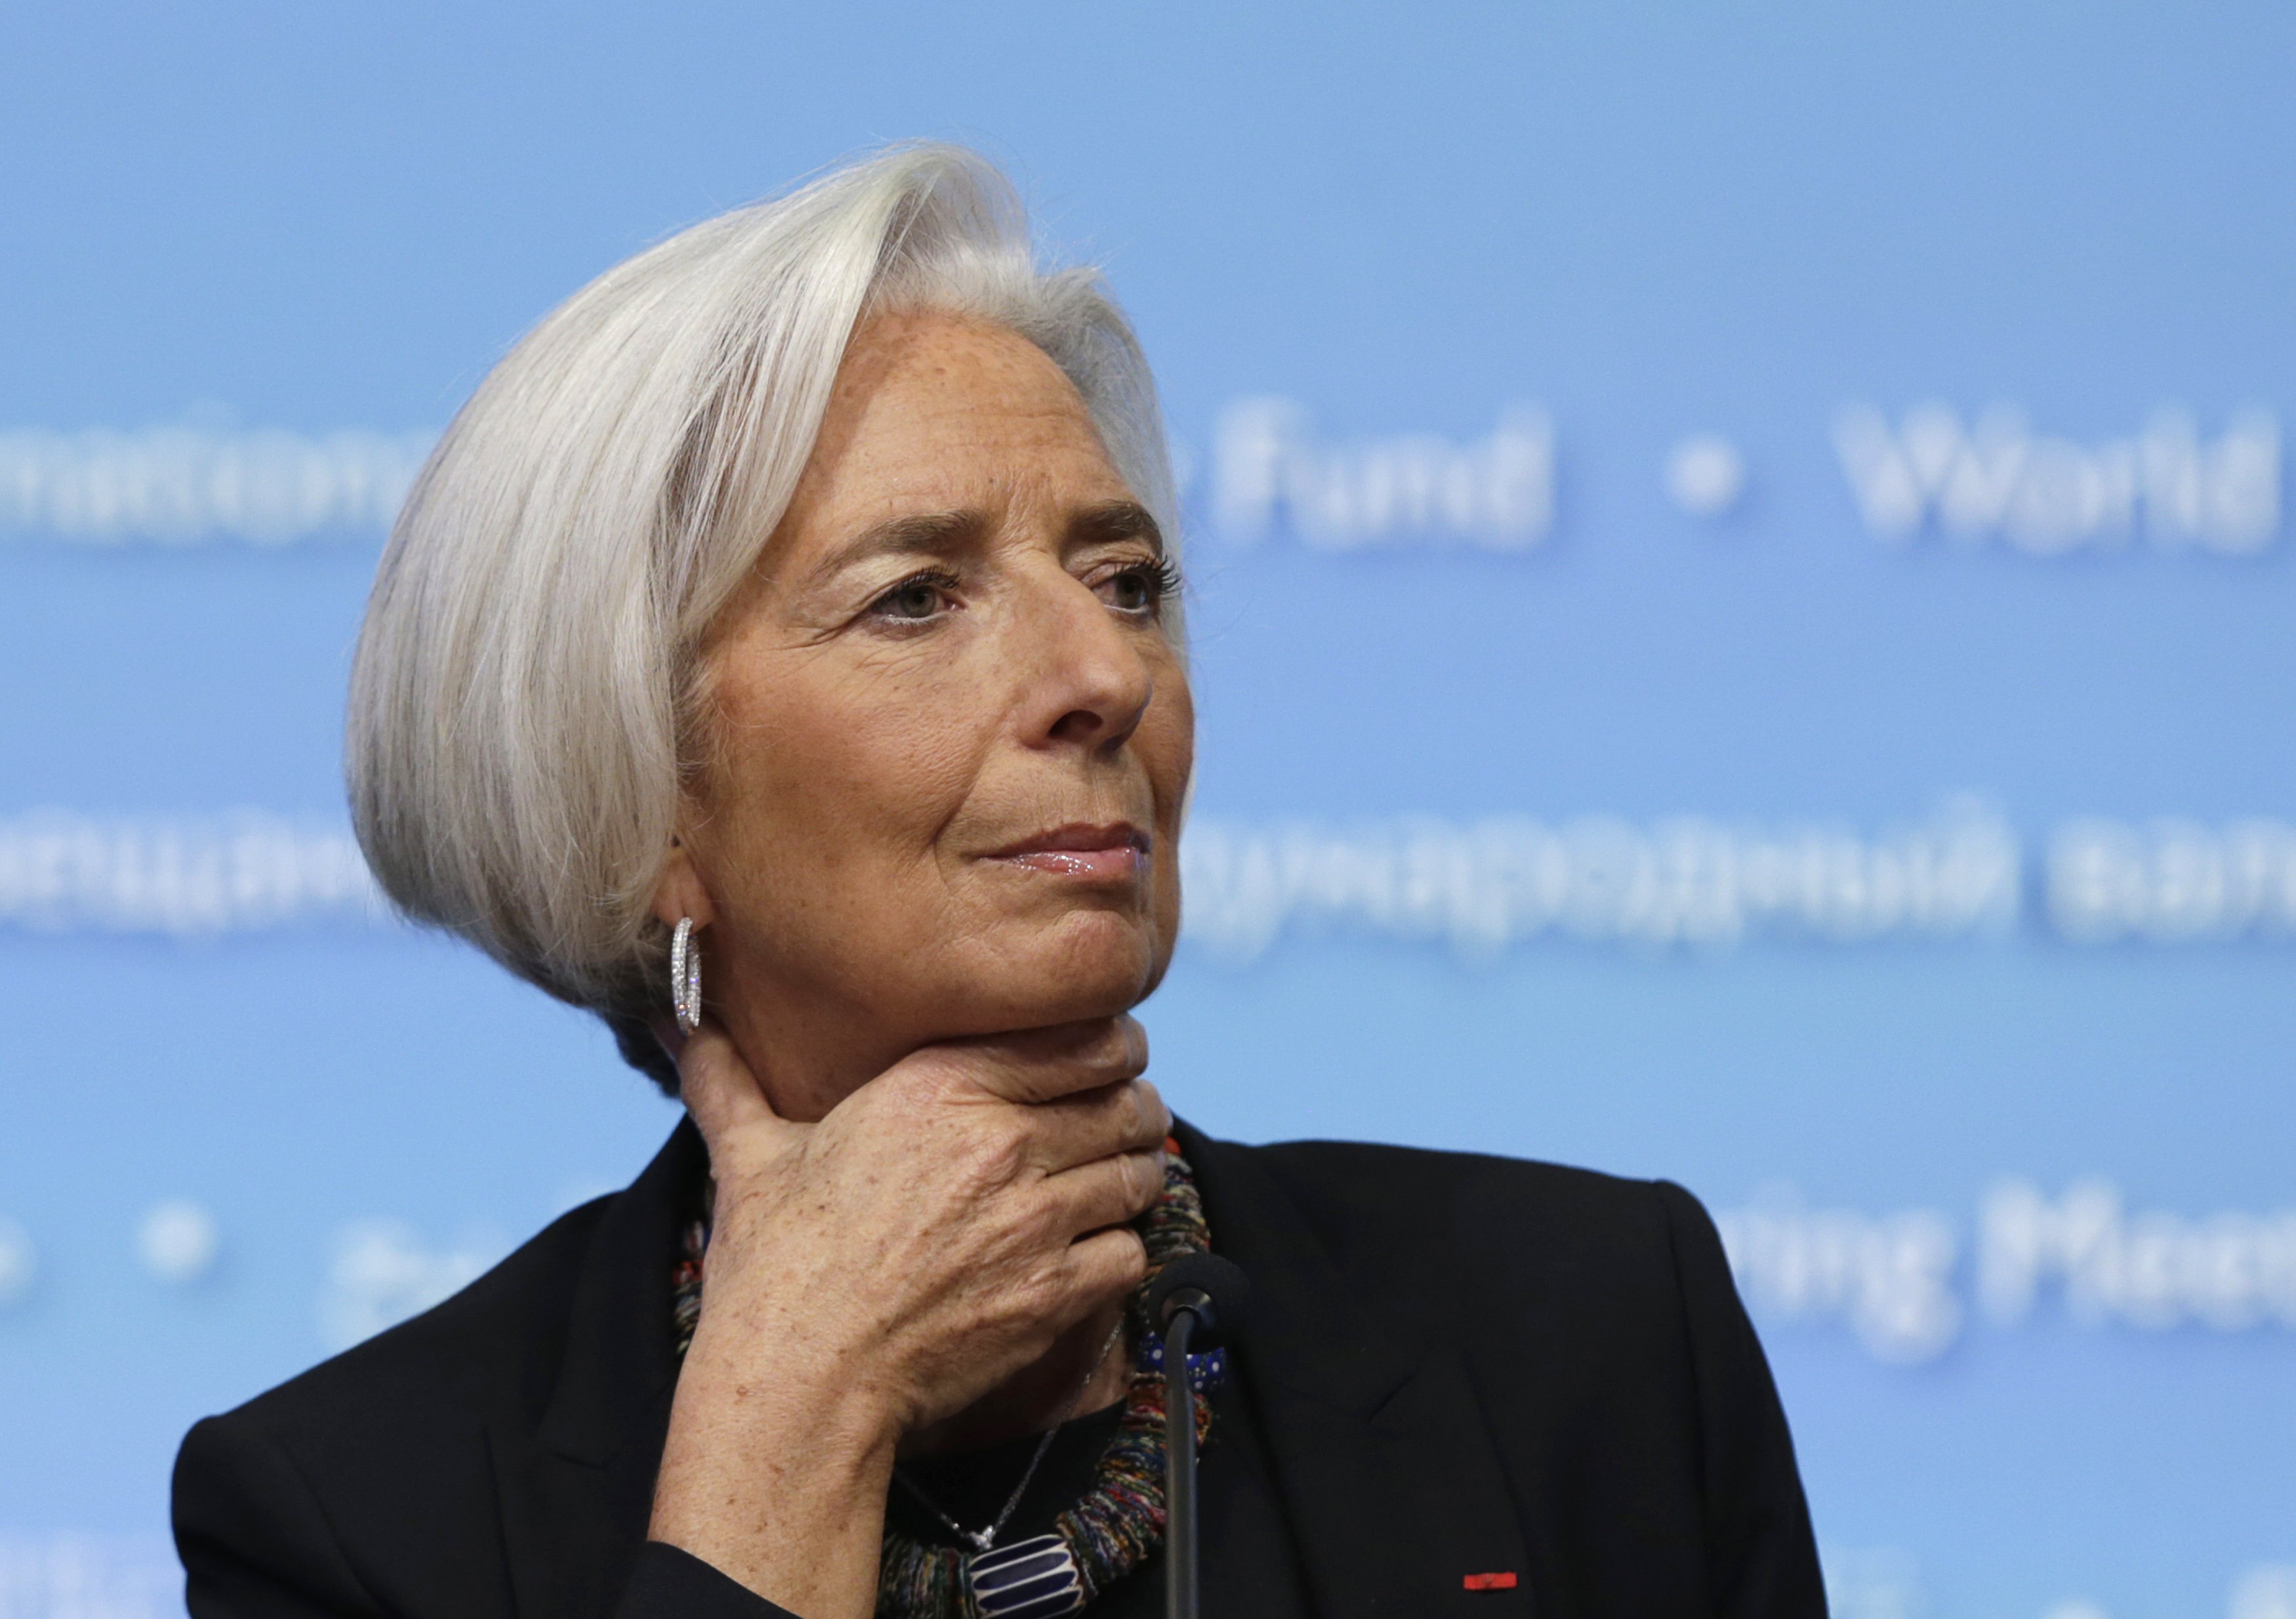 Christine Lagarde culpable de negligencia pero exenta de pena en juicio